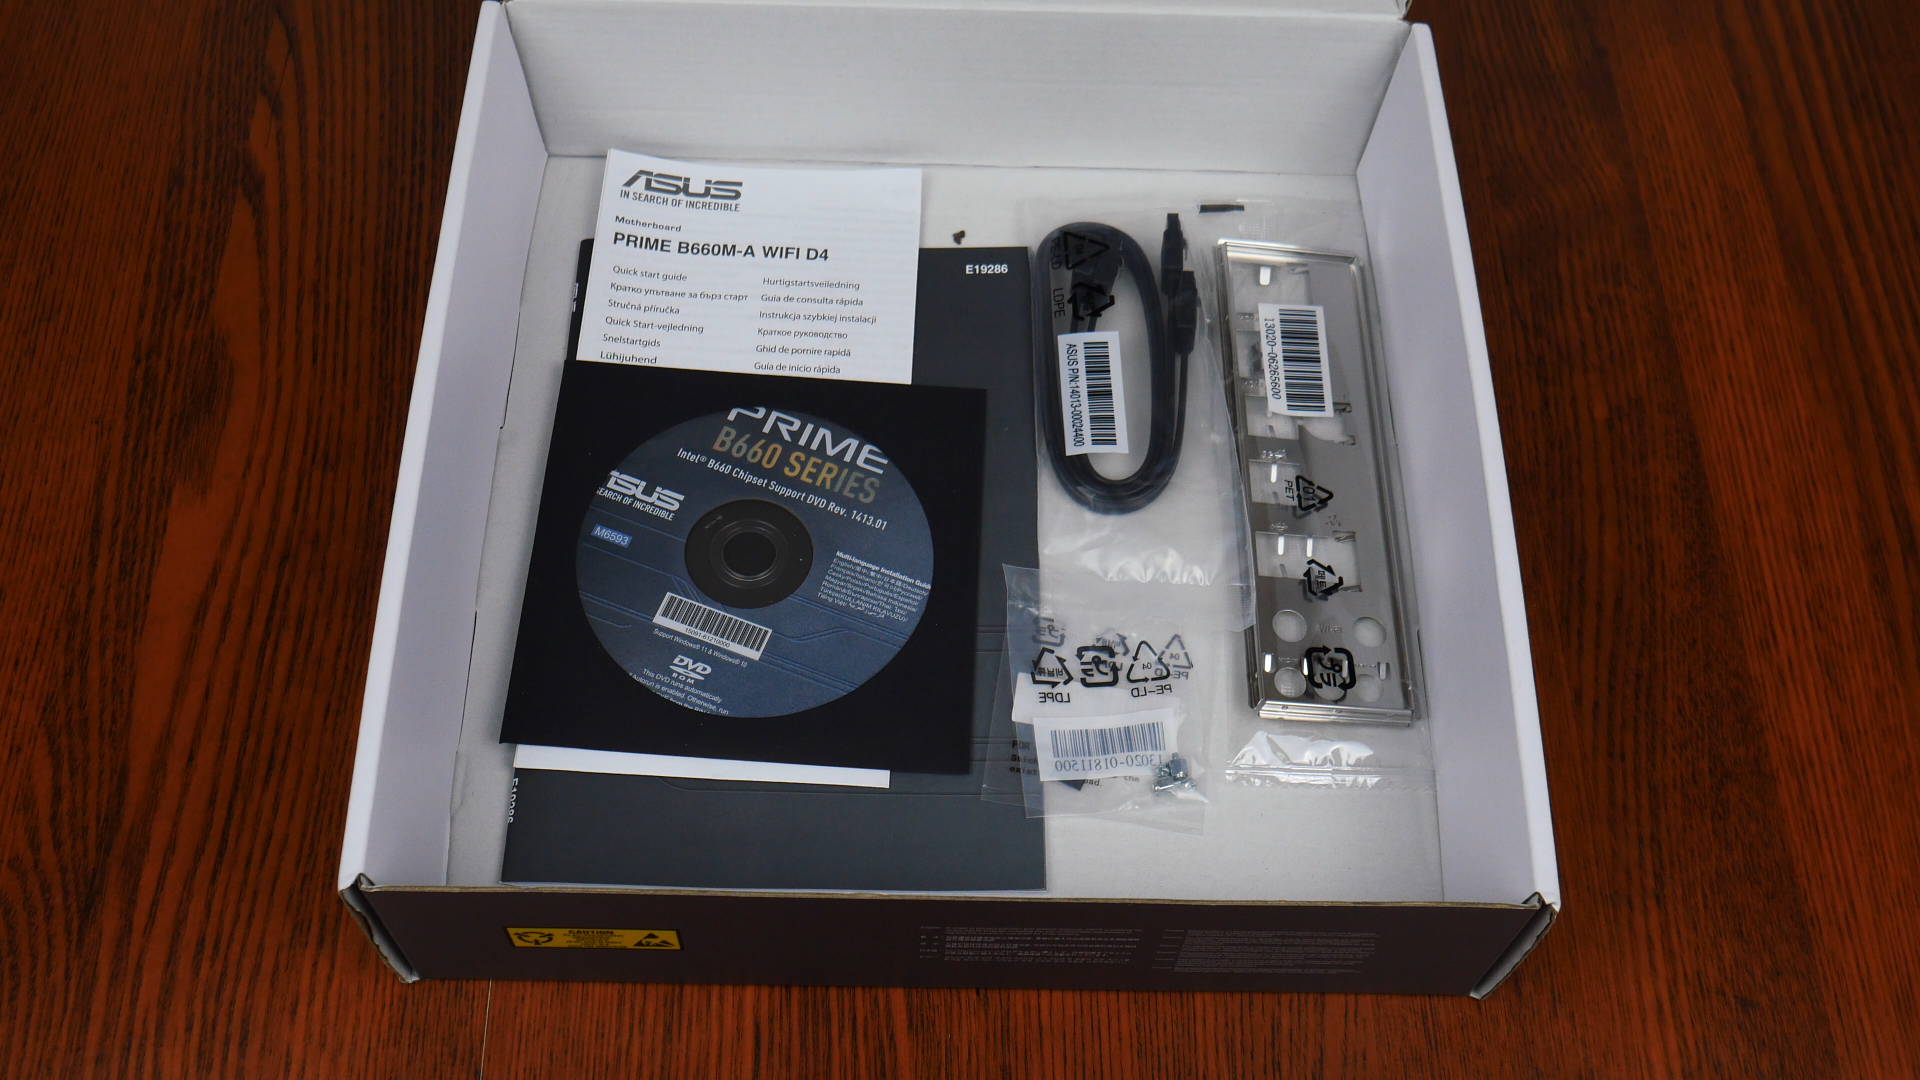 ASUS PRIME B660M-A WIFI D4 Box Contents